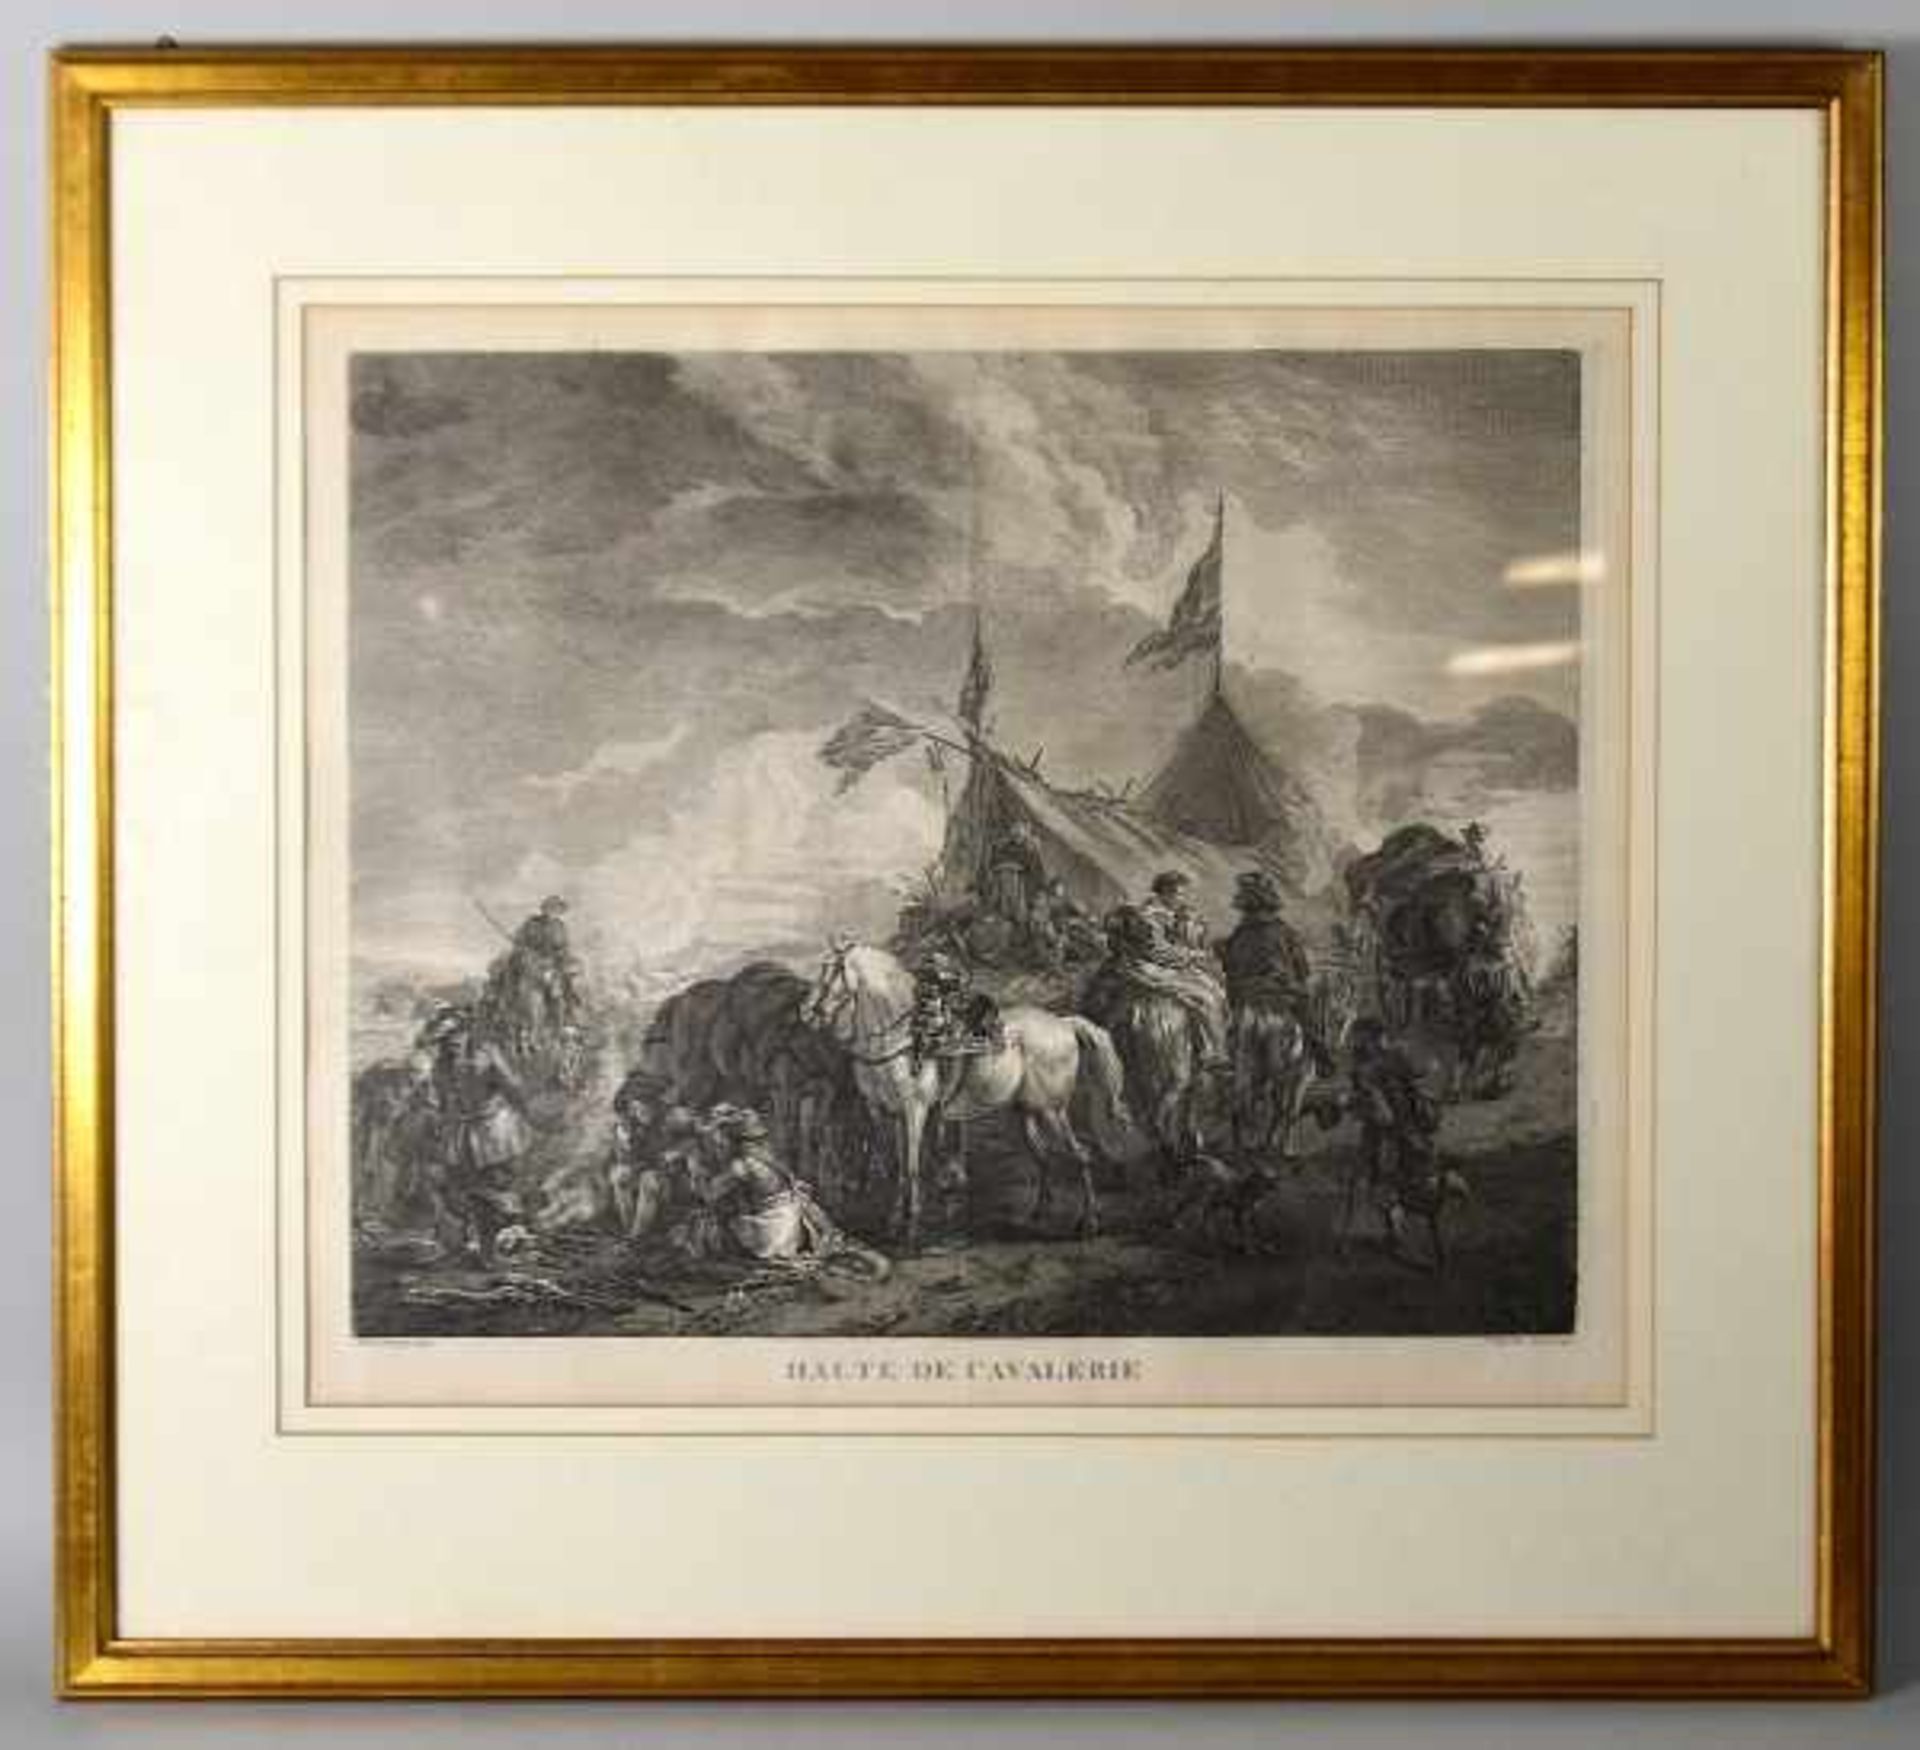 ANSICHT BERITTENE "Halte de Cavalerie", Jean-Charles Baquoy (1721-1772) nach Philips Wouwerman, - Bild 2 aus 2